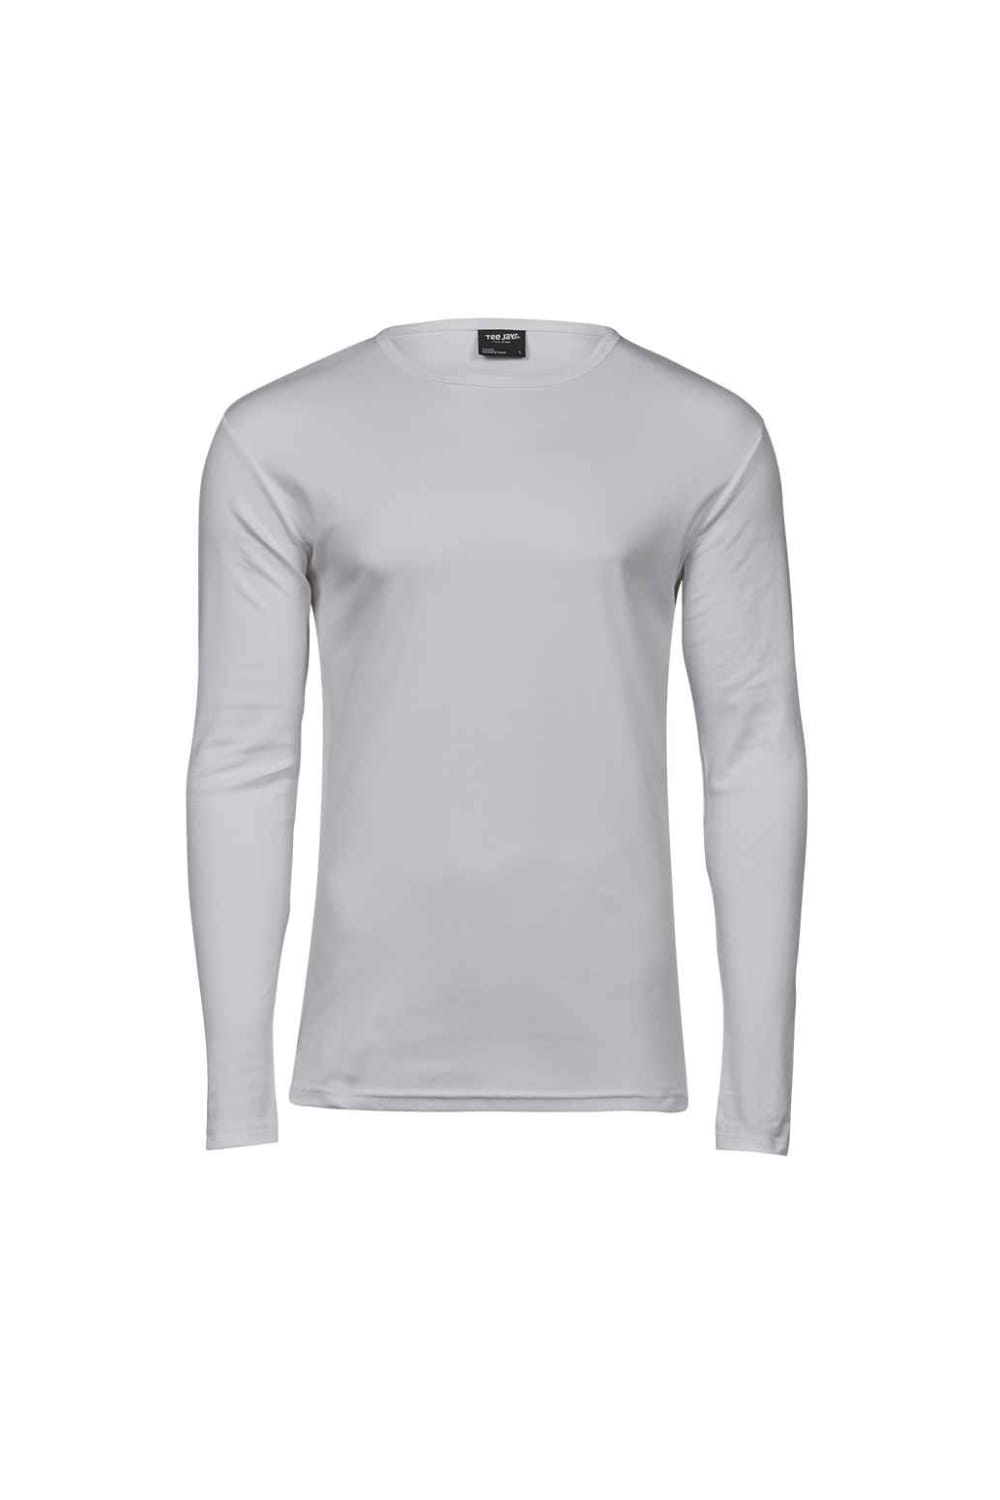 Mens Interlock Long-Sleeved T-Shirt - White